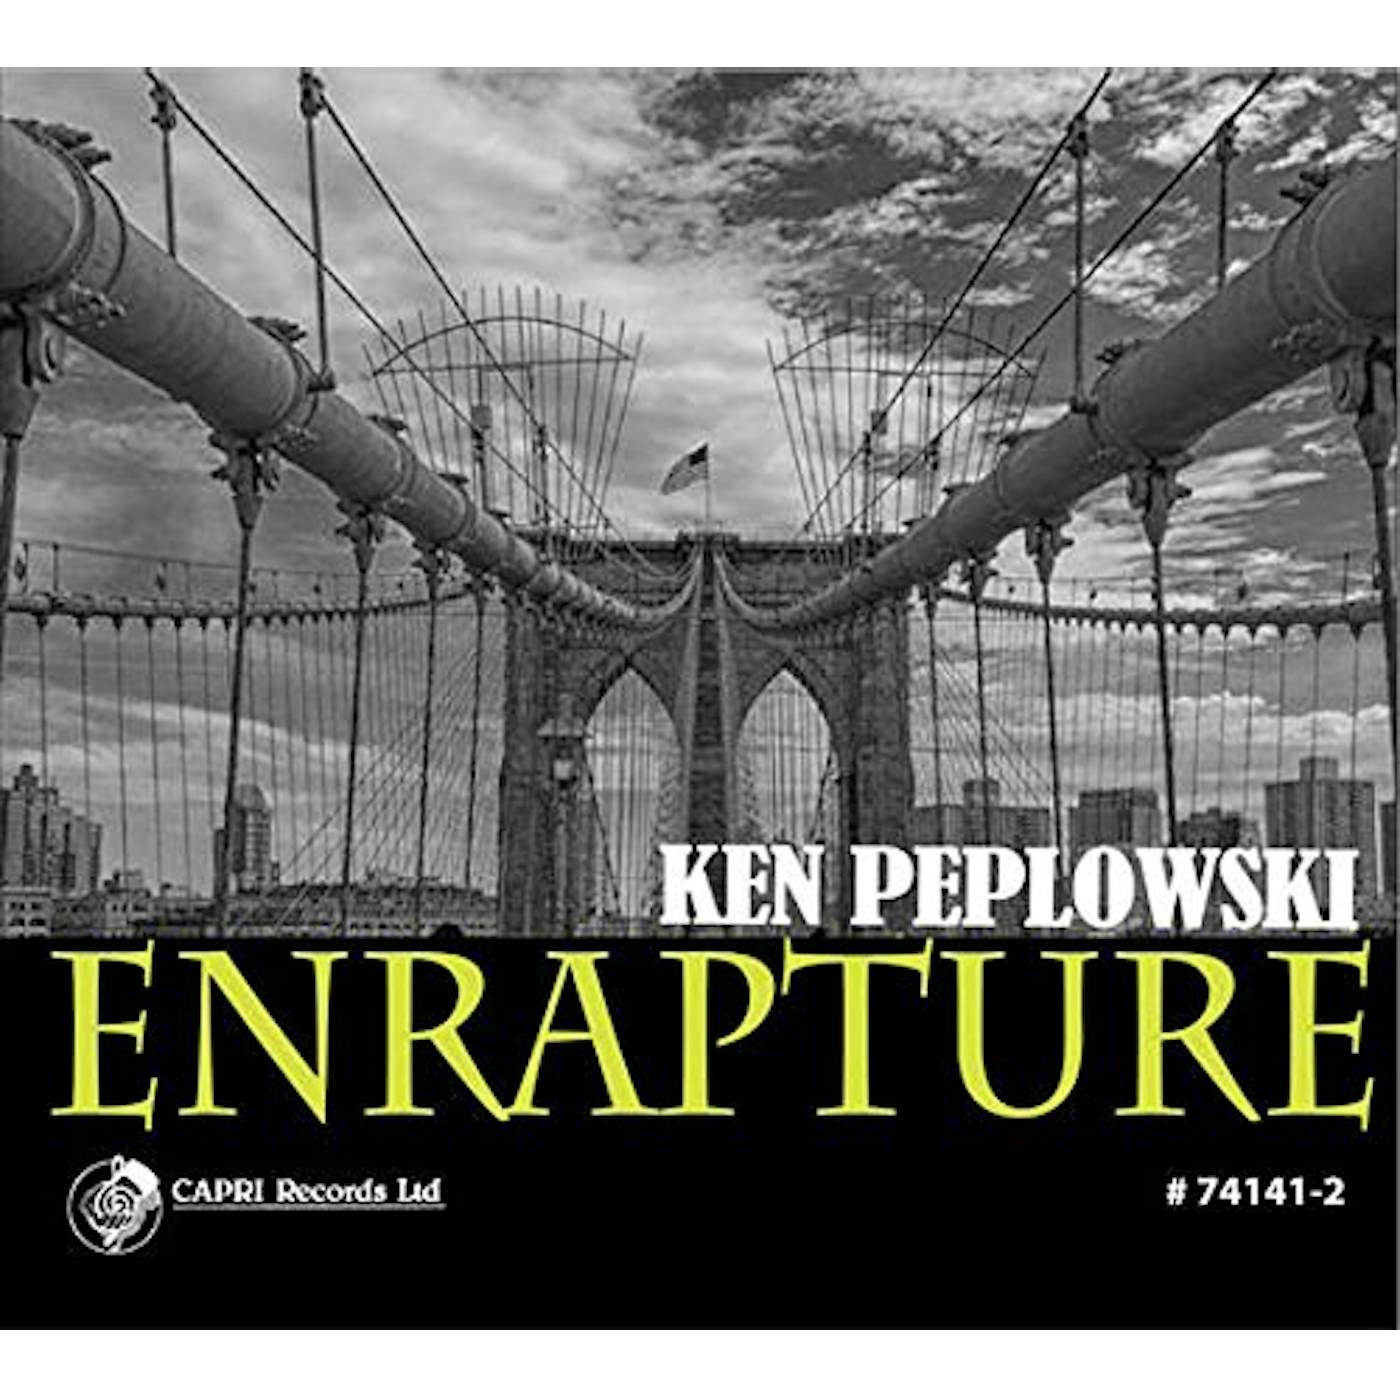 Ken Peplowski ENRAPTURE CD